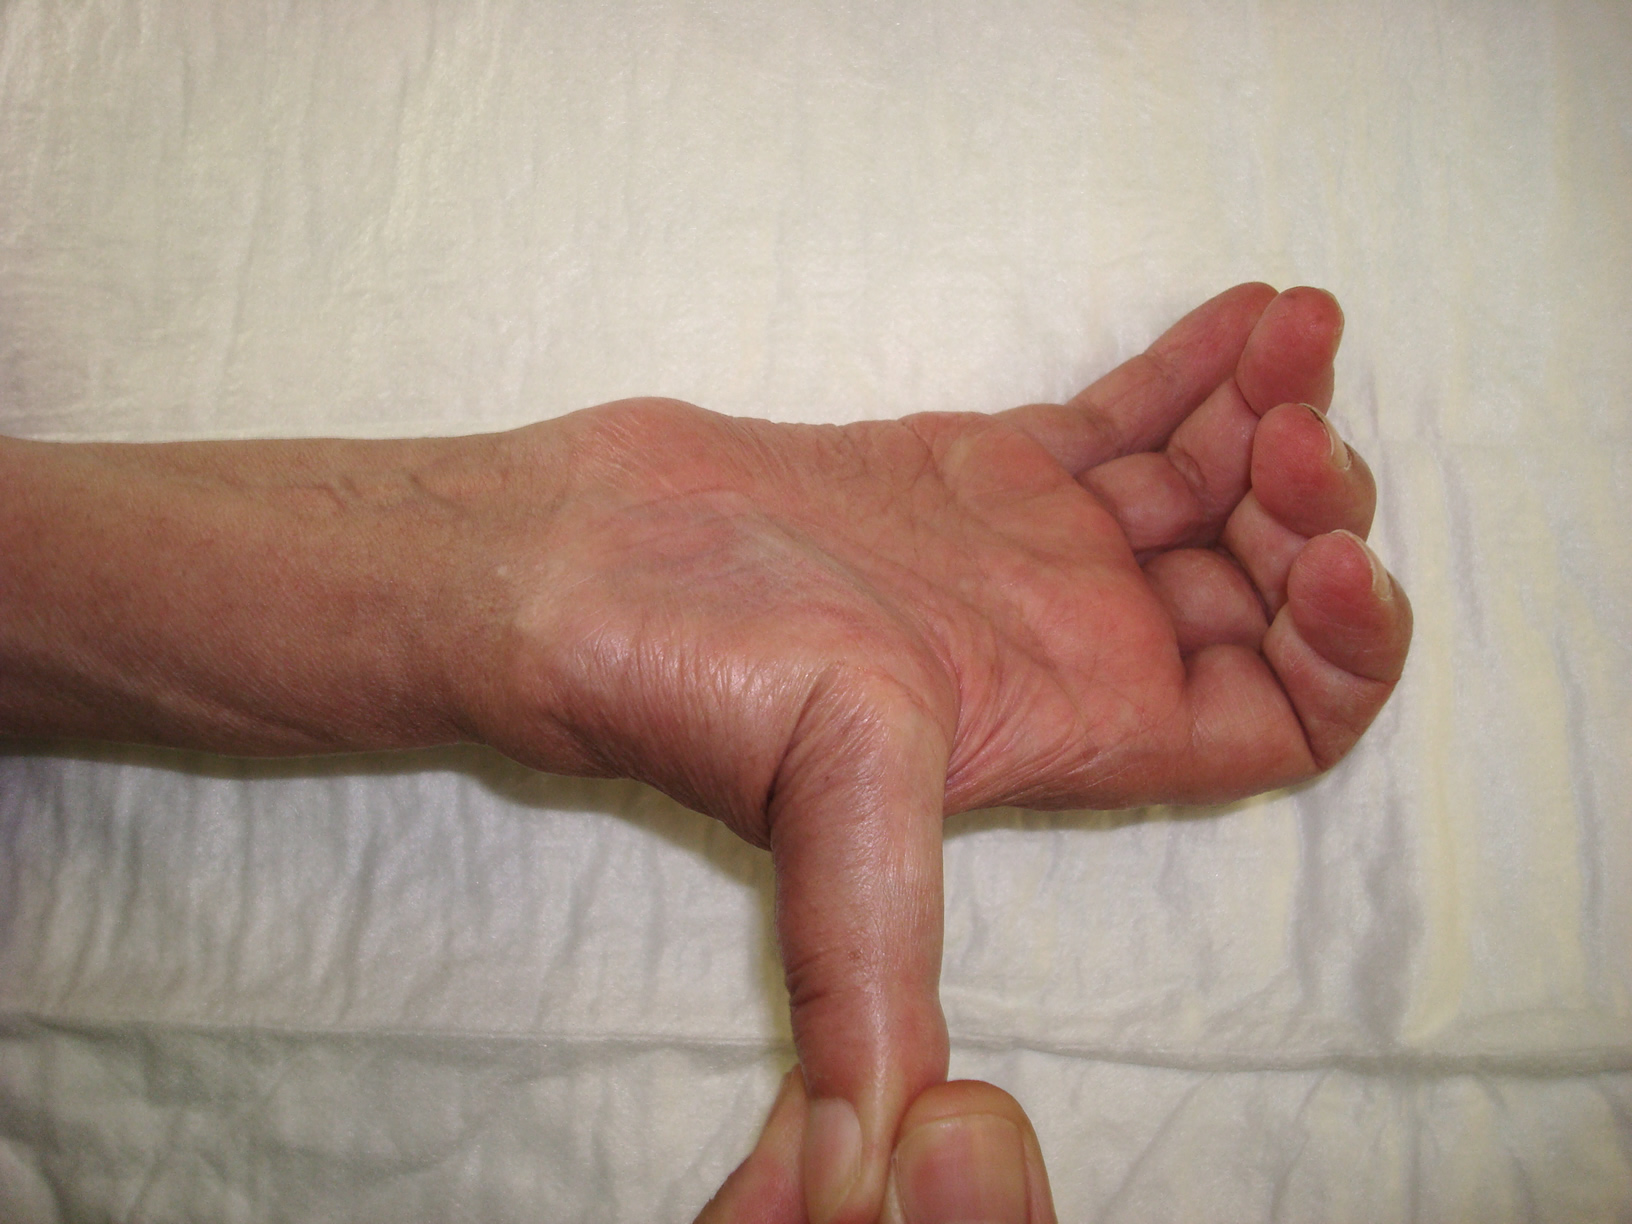 La hiperlaxitut lligamentosa causa de dolor a les mans dels músics